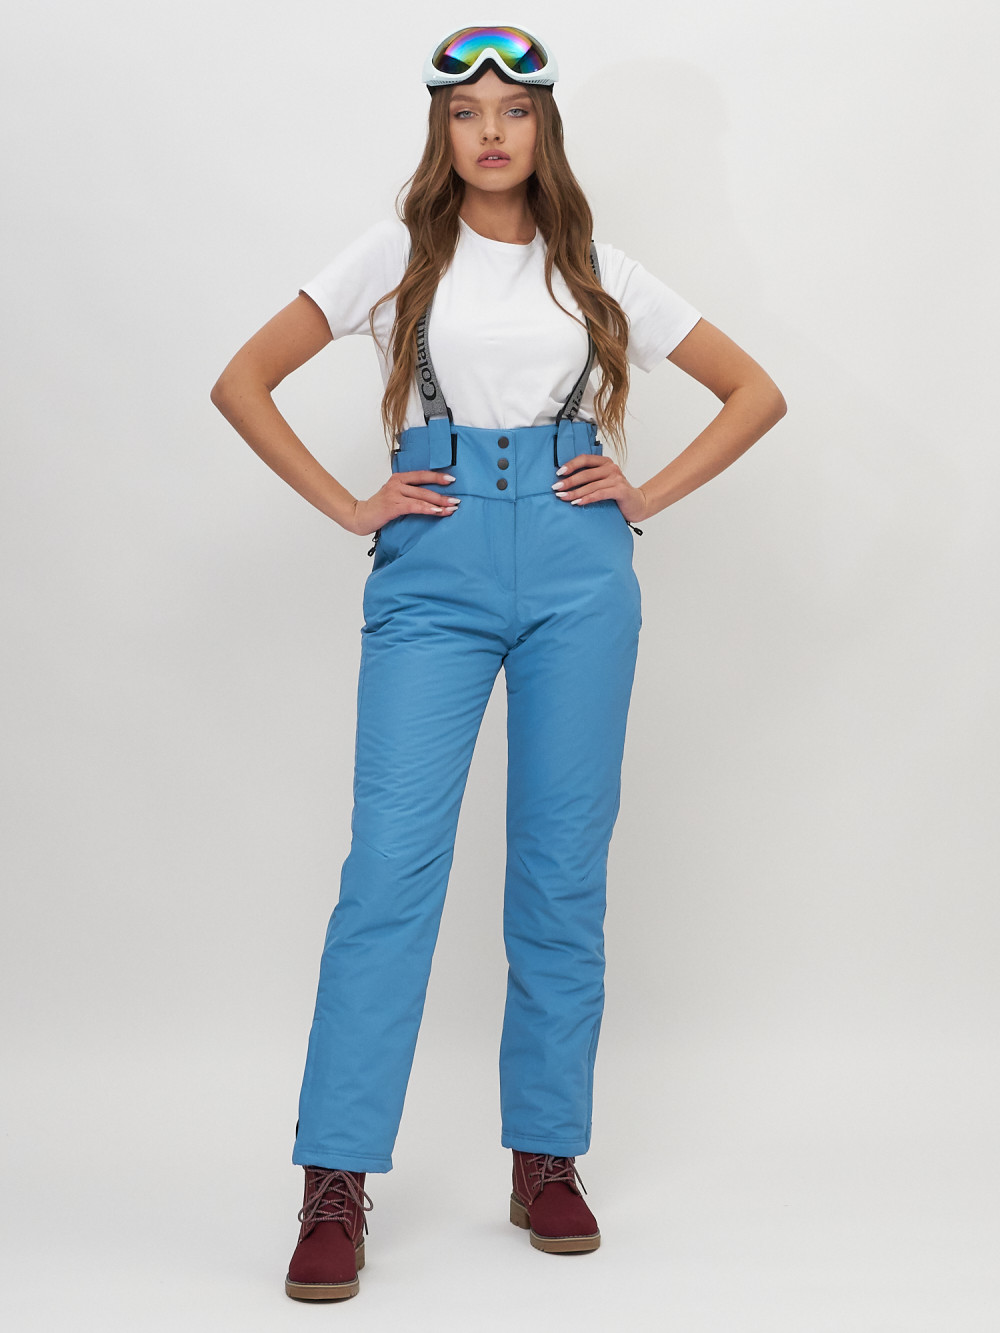 Купить Полукомбинезон брюки горнолыжные женские голубого цвета 66215Gl